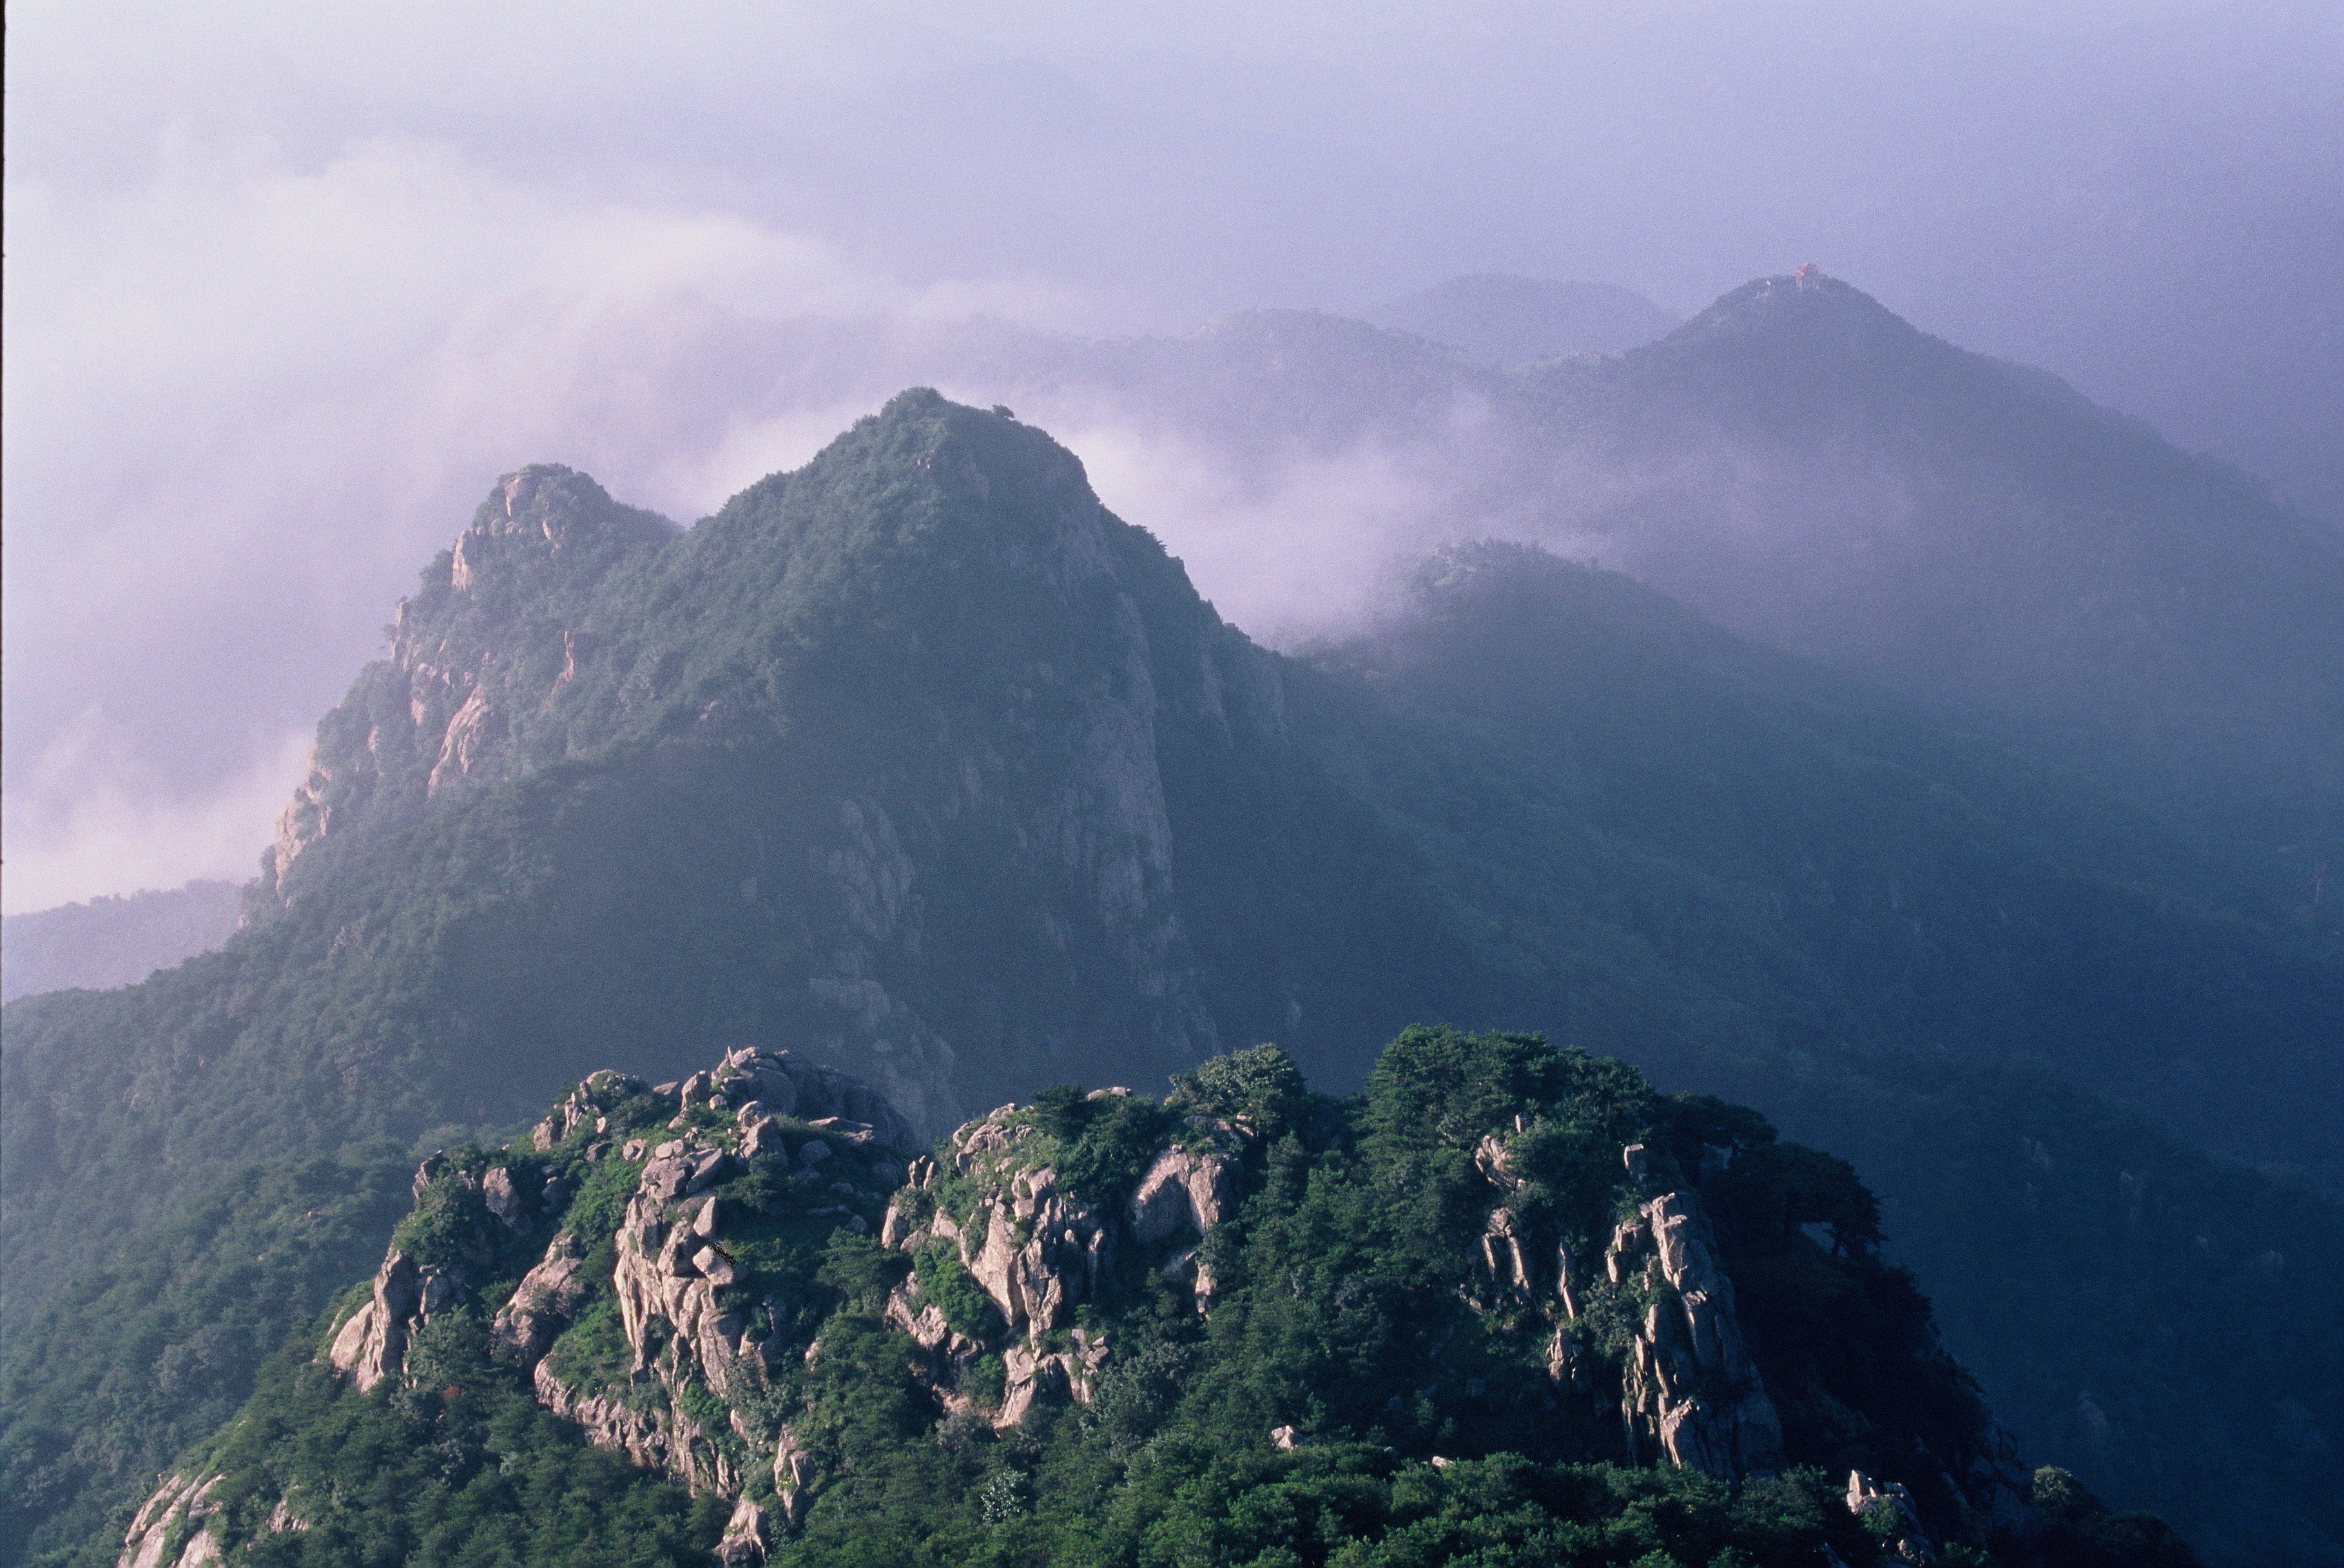 Горно тай. Китай Священная гора Тайшань. Гора Тайшань ЮНЕСКО. Гора Тайшань (провинция Шаньдун). Великая Восточная вершина — Тайшань.